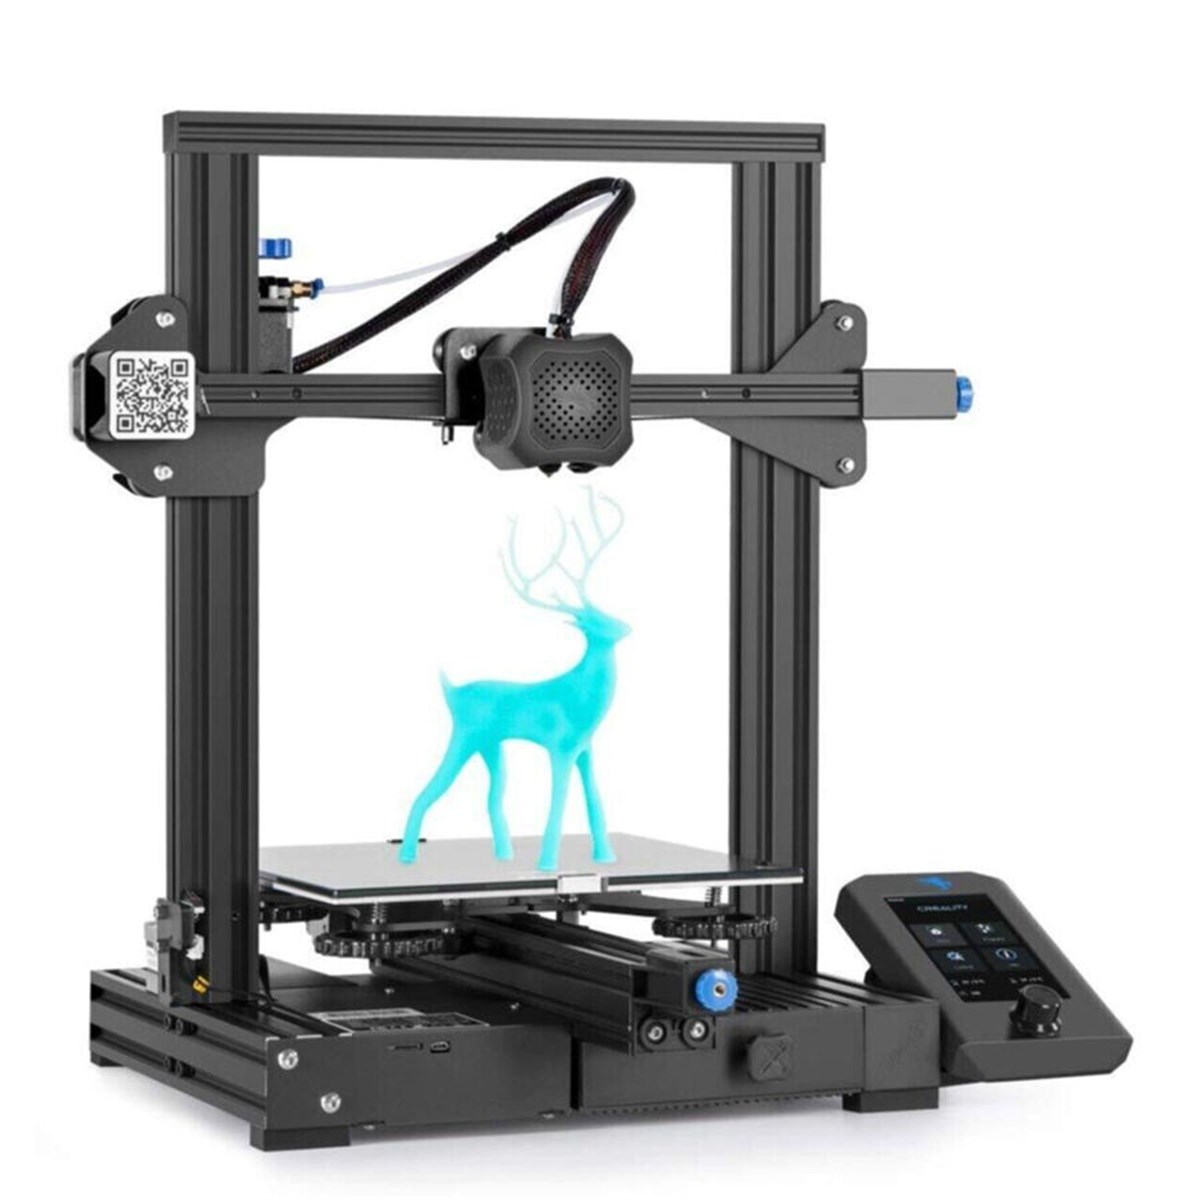 Creality Ender 3 V2 - Geliştirilmiş 3D Yazıcı